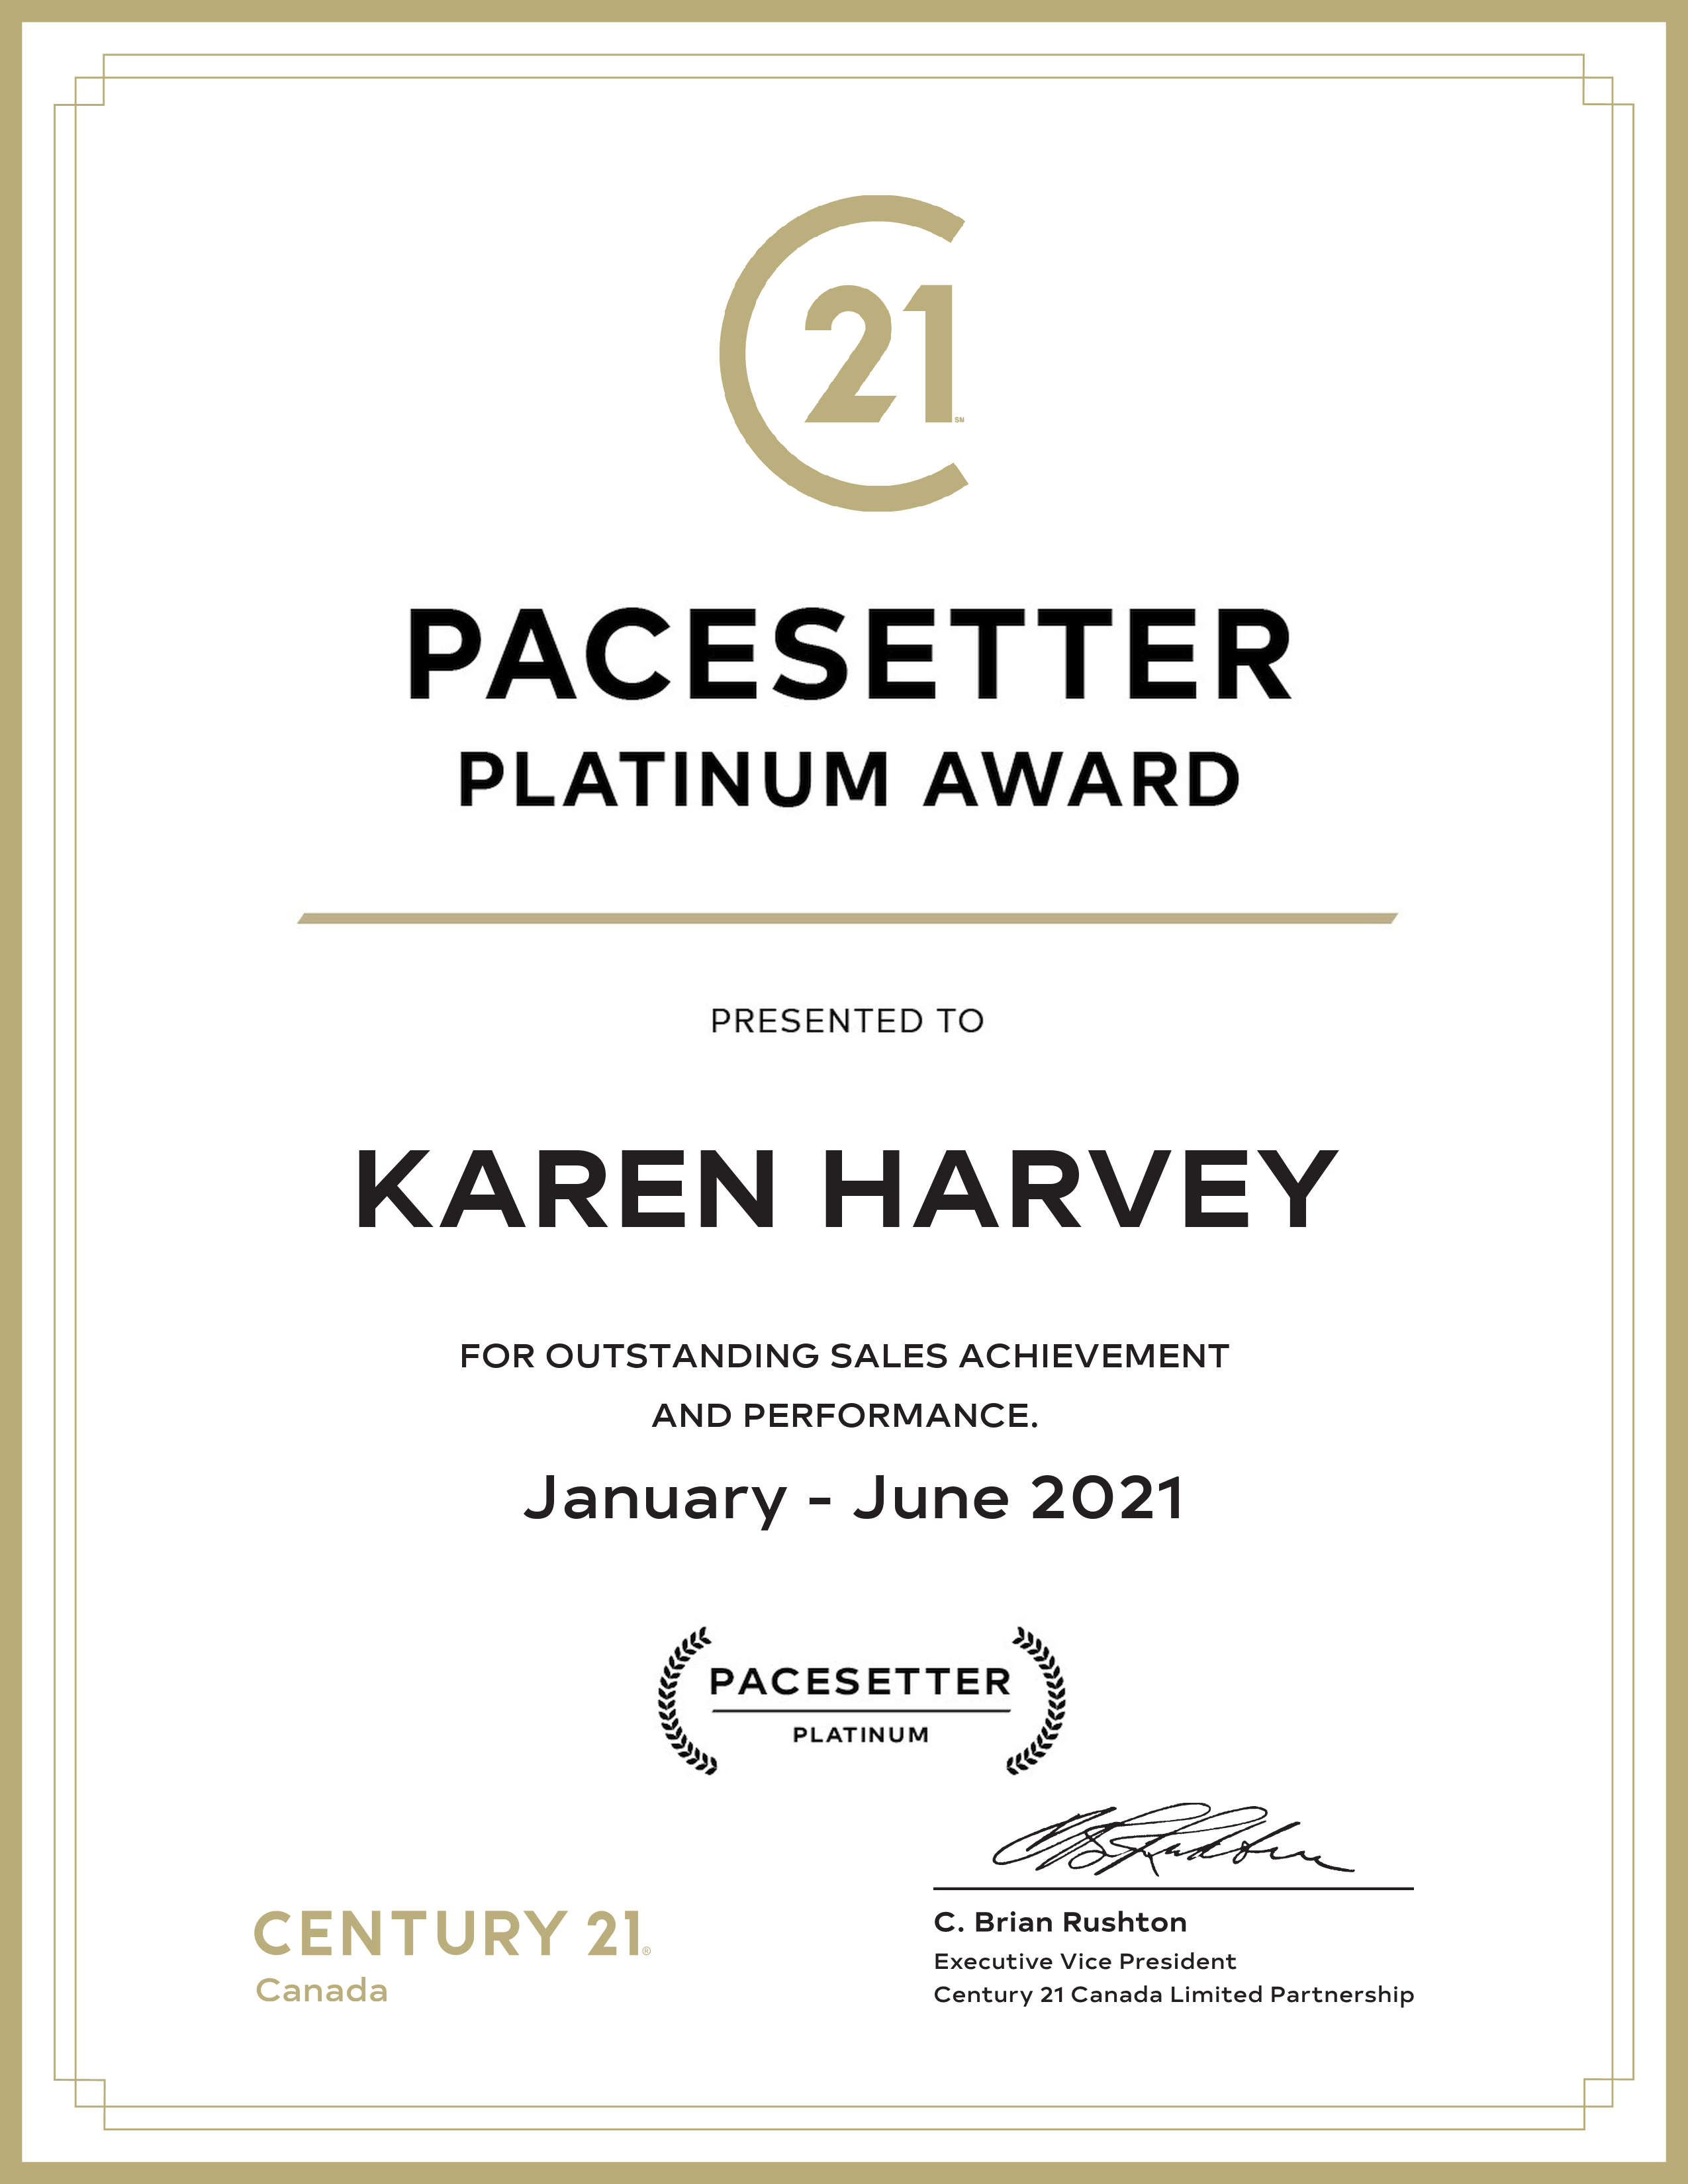 Karen Harvey - PACESETTER AWARD 2021 - IMAGE